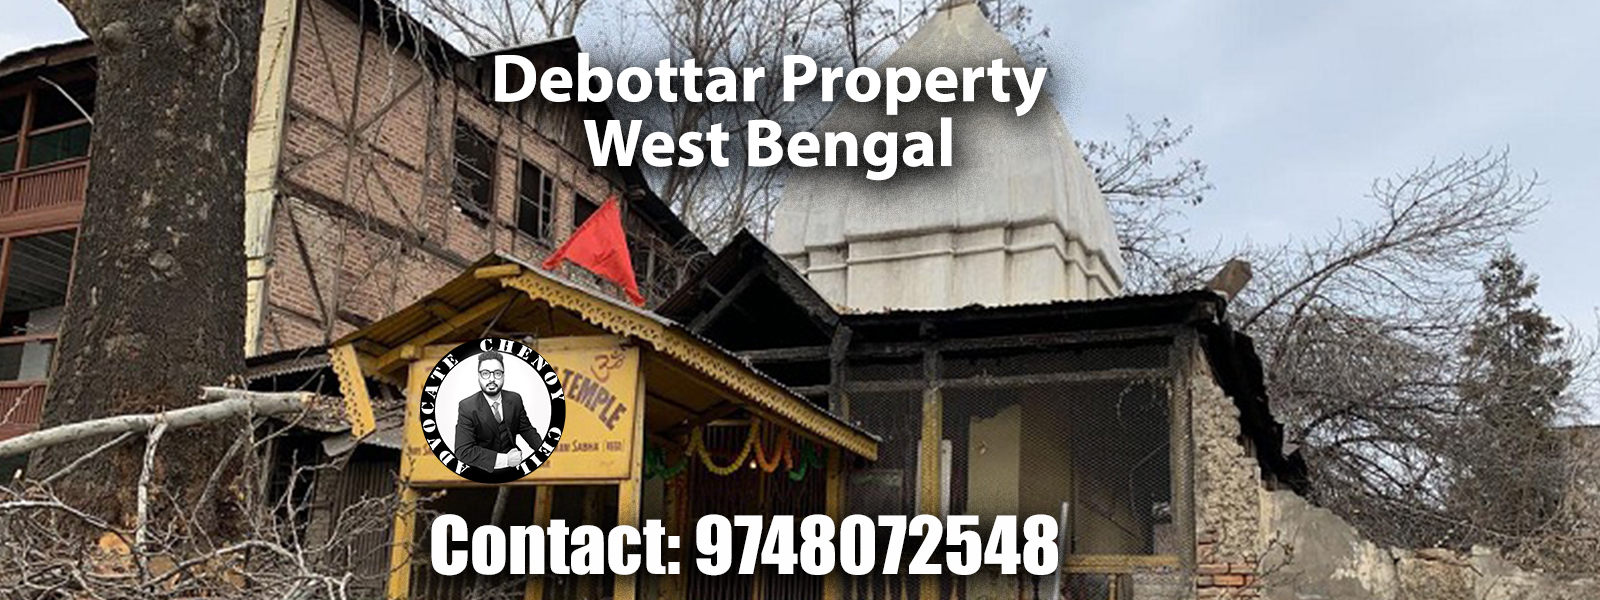 Debottar Property West Bengal